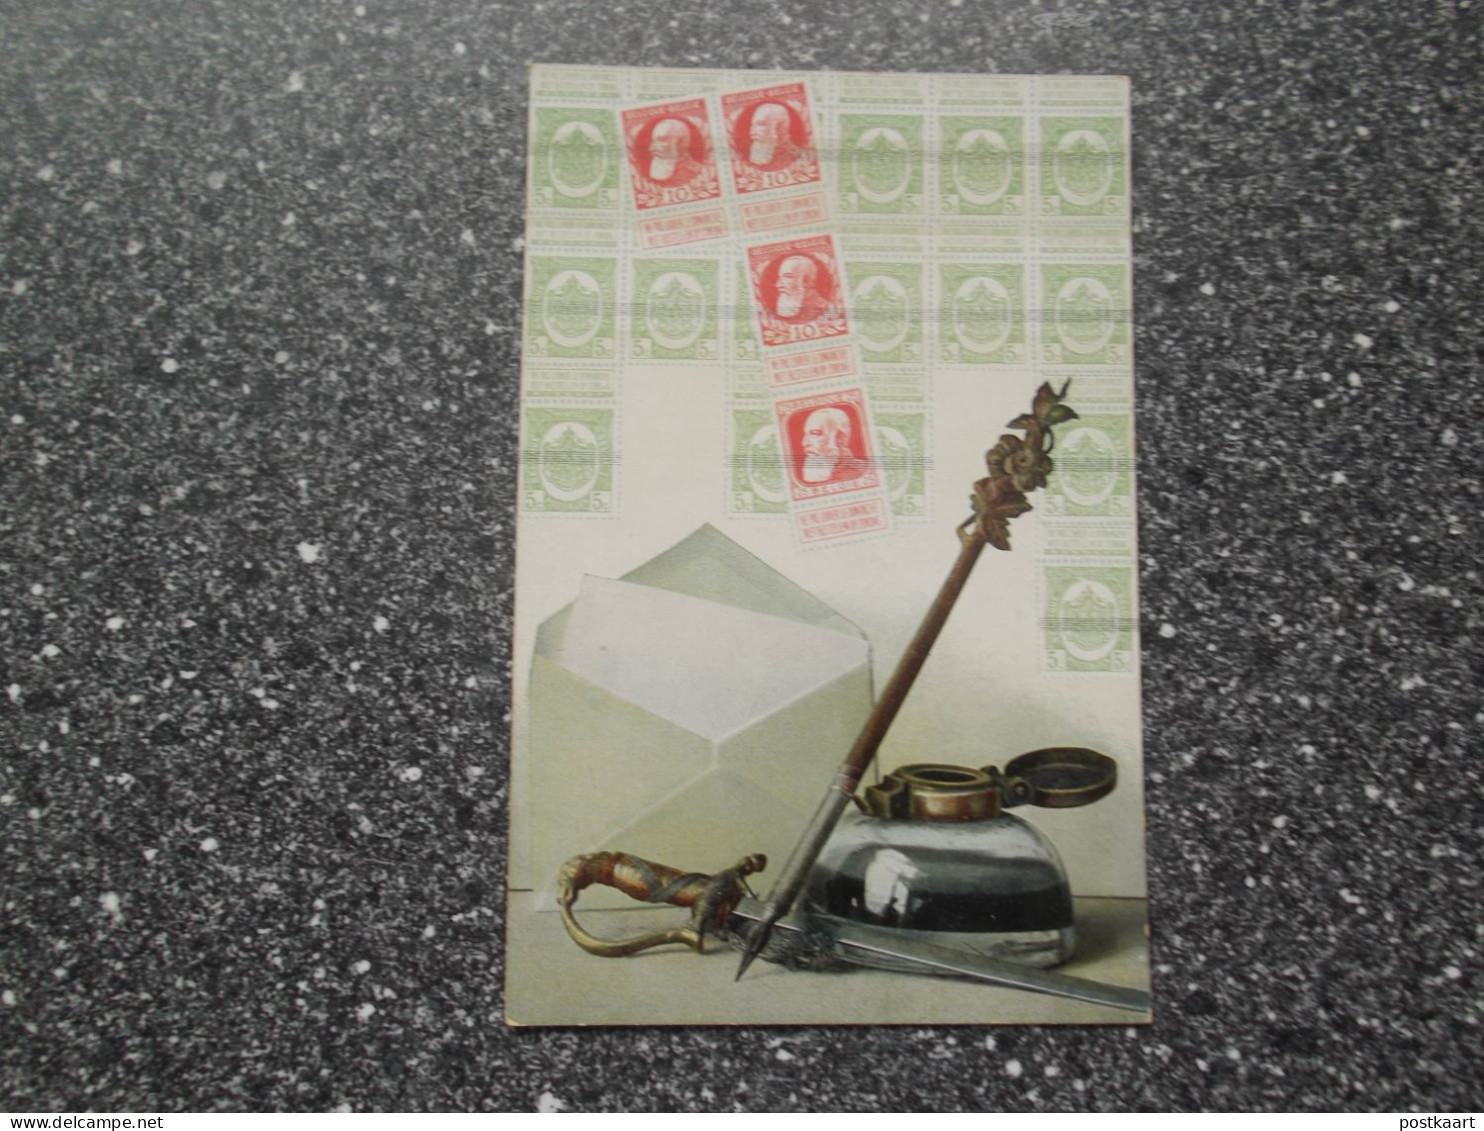 POSTKAART: Zegels België - Briefmarken (Abbildungen)